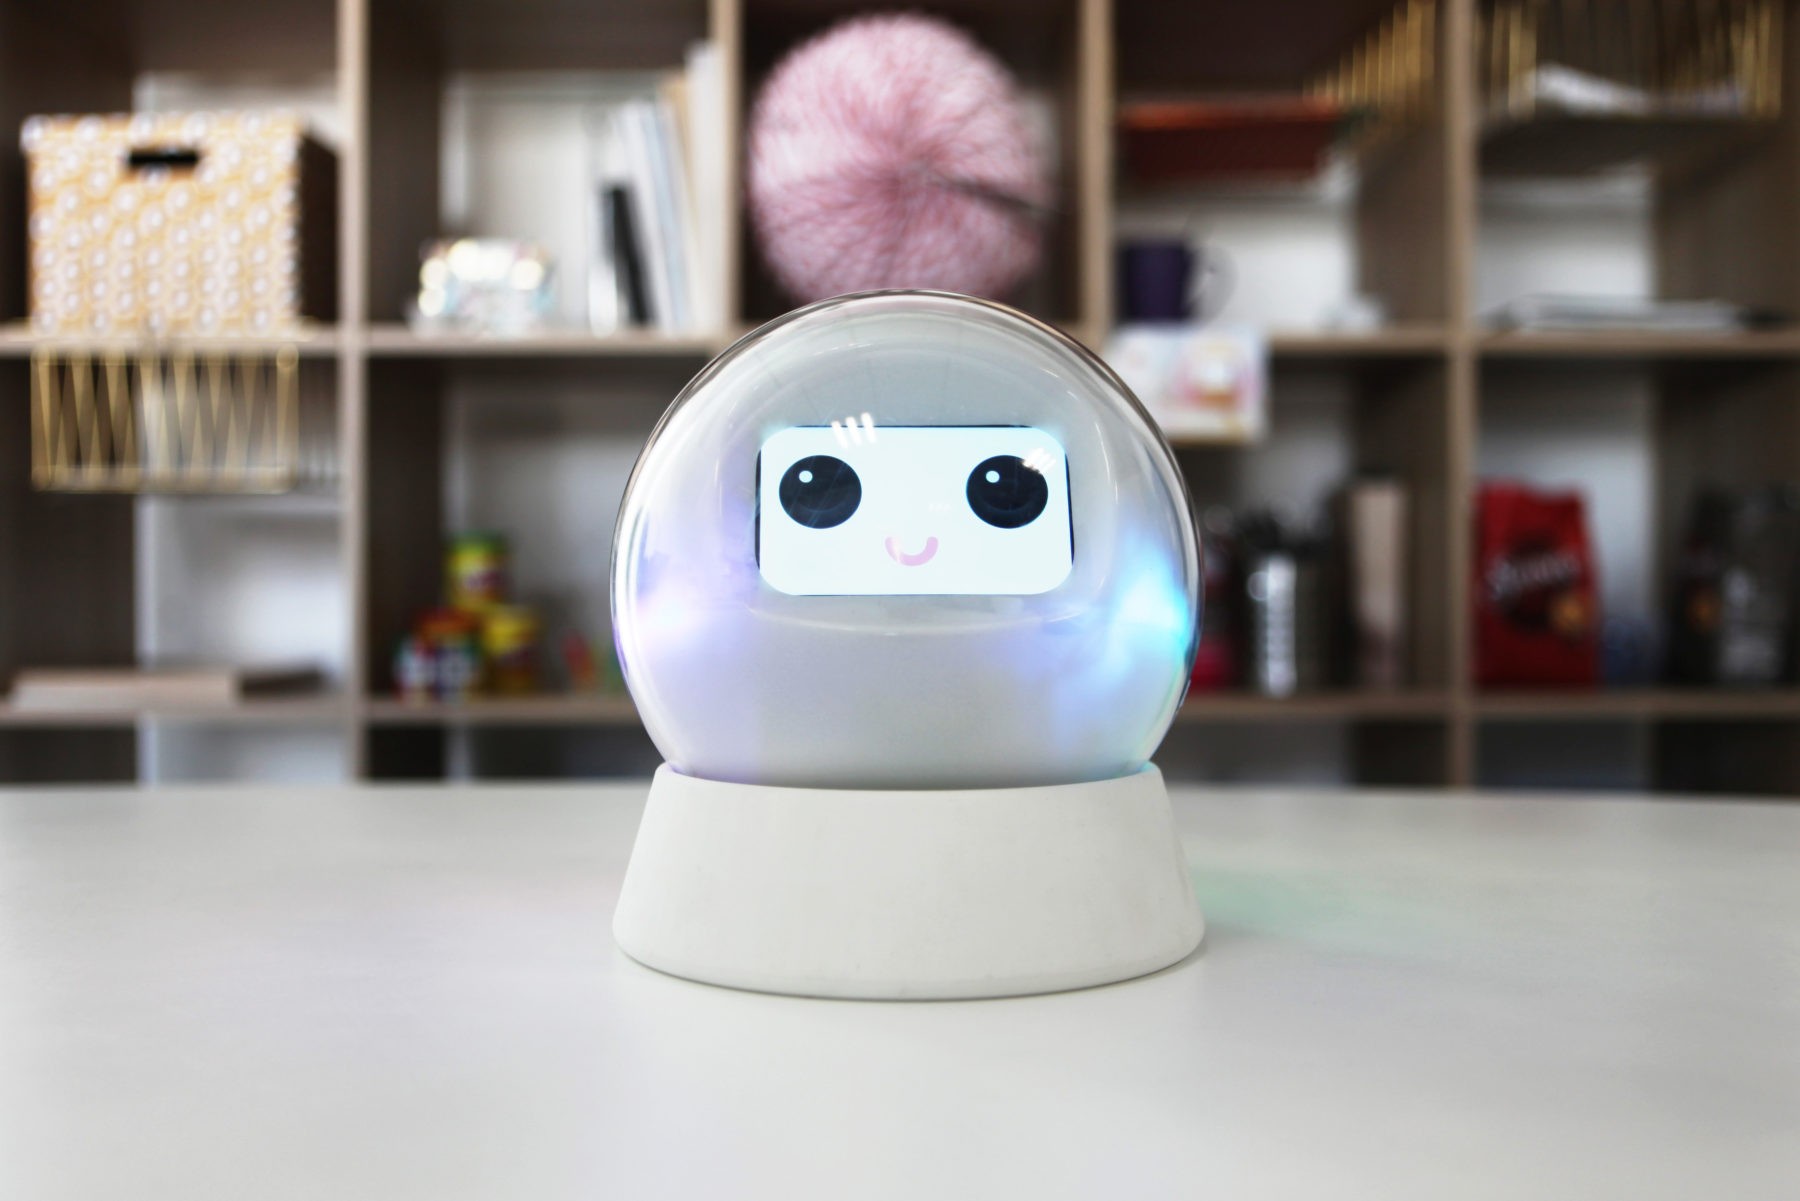 Leka, un robot interactif au service de l'autisme